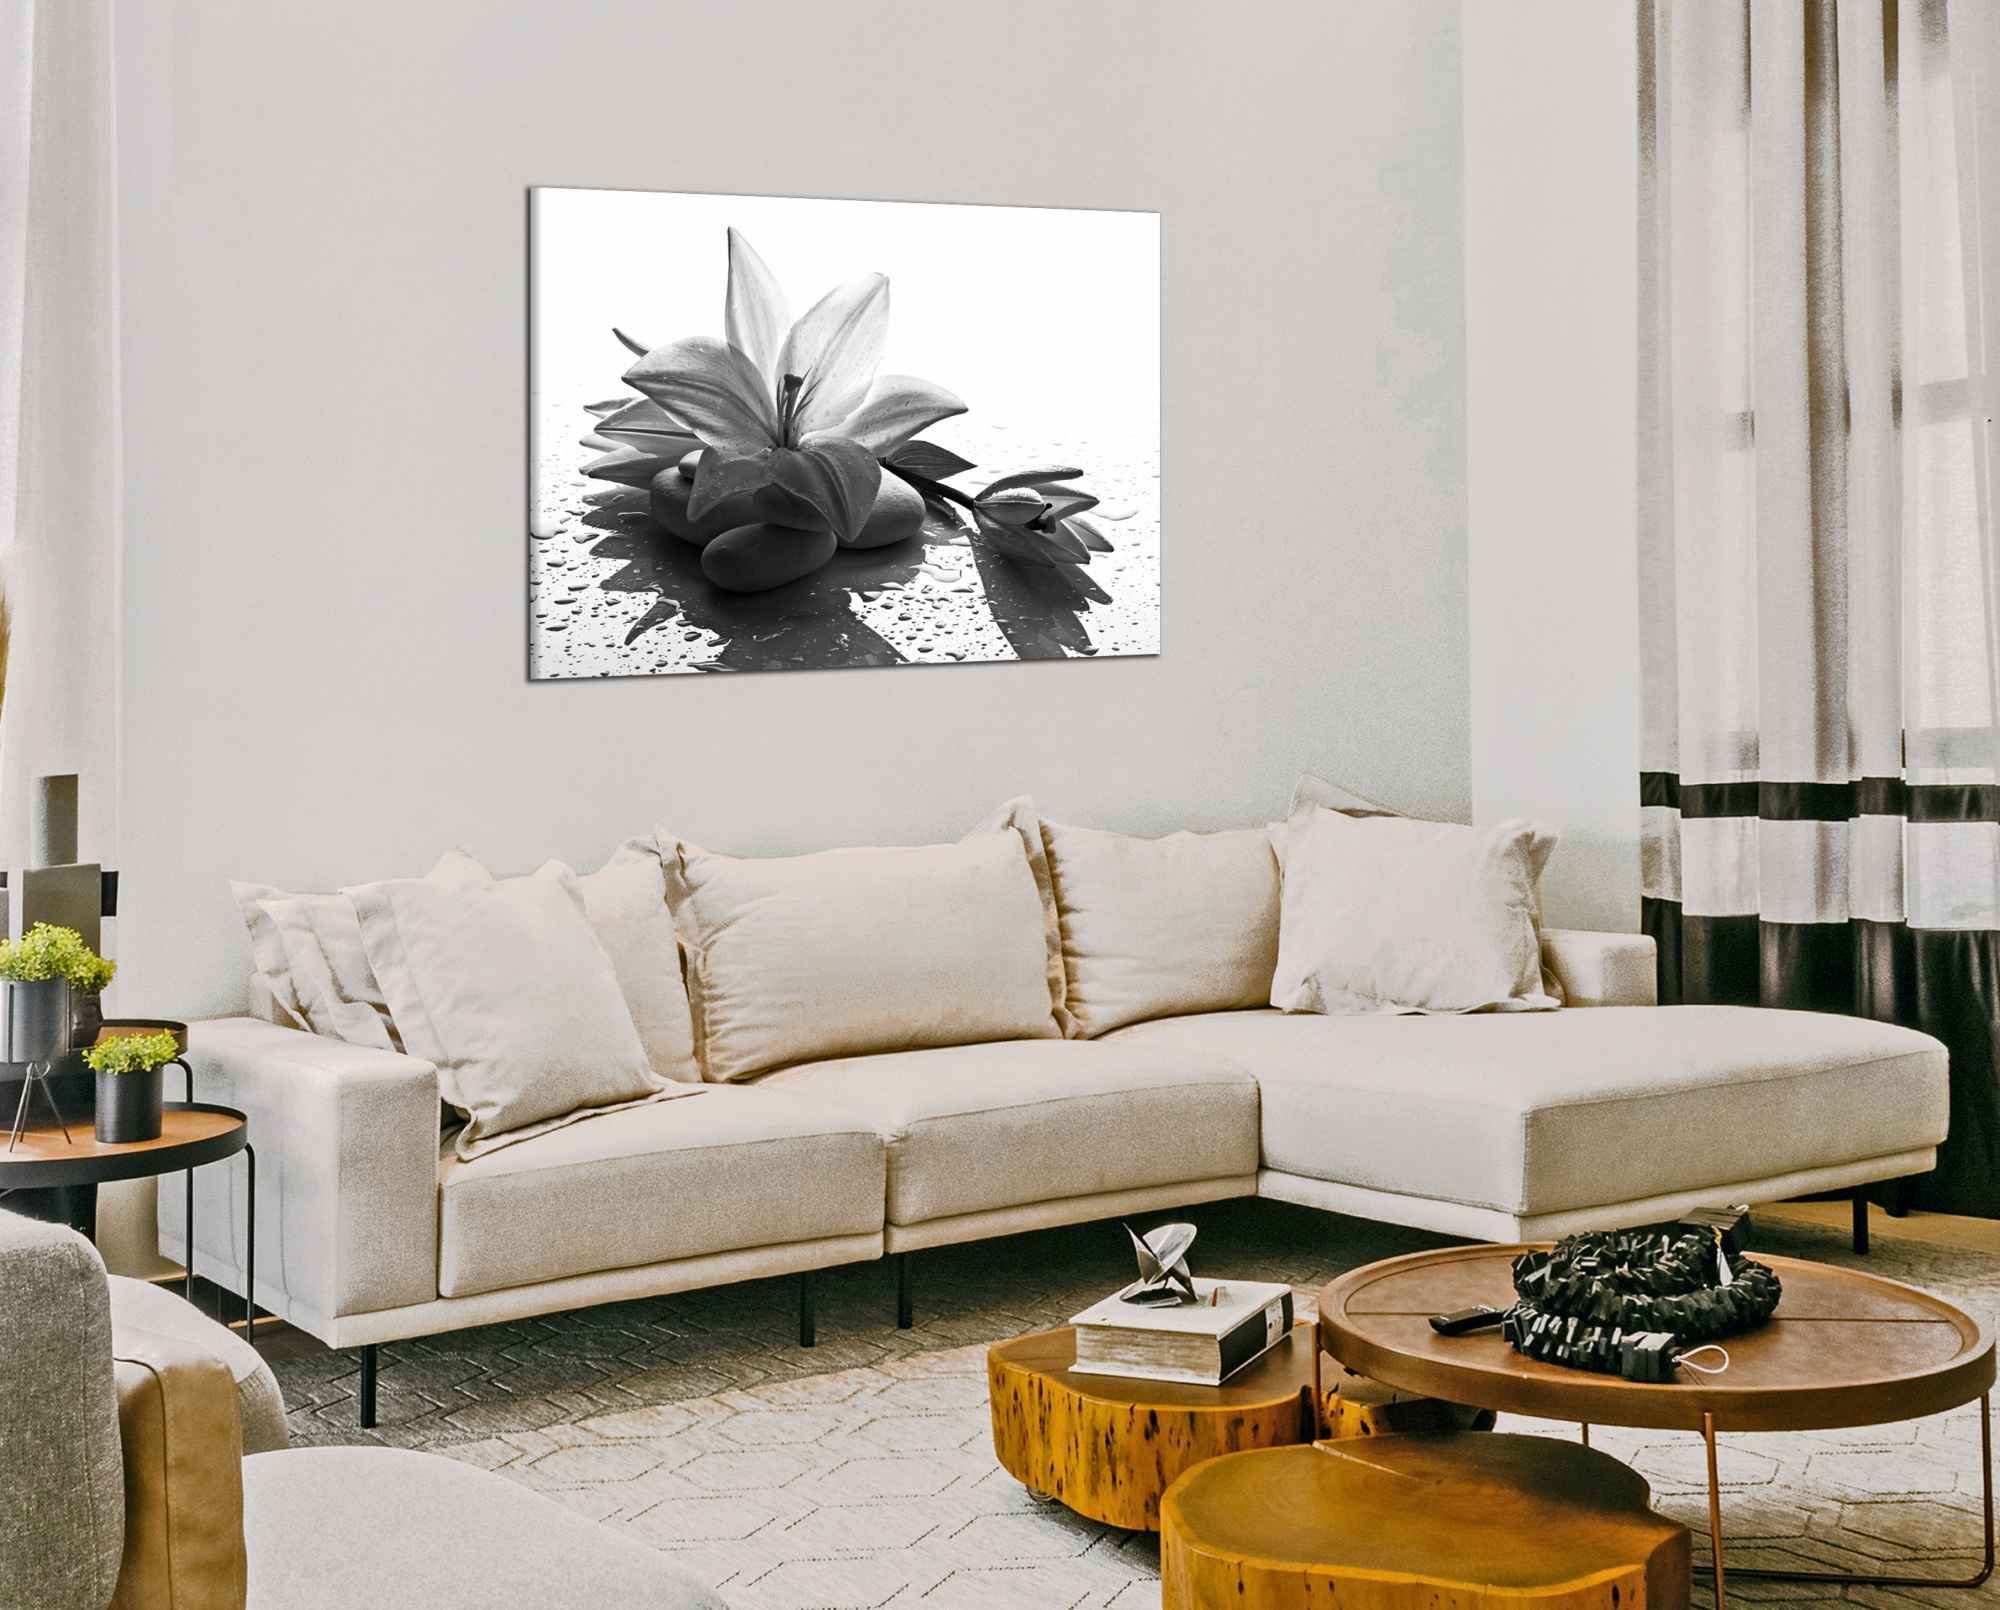 Obdelníkový obraz Černobílý květ